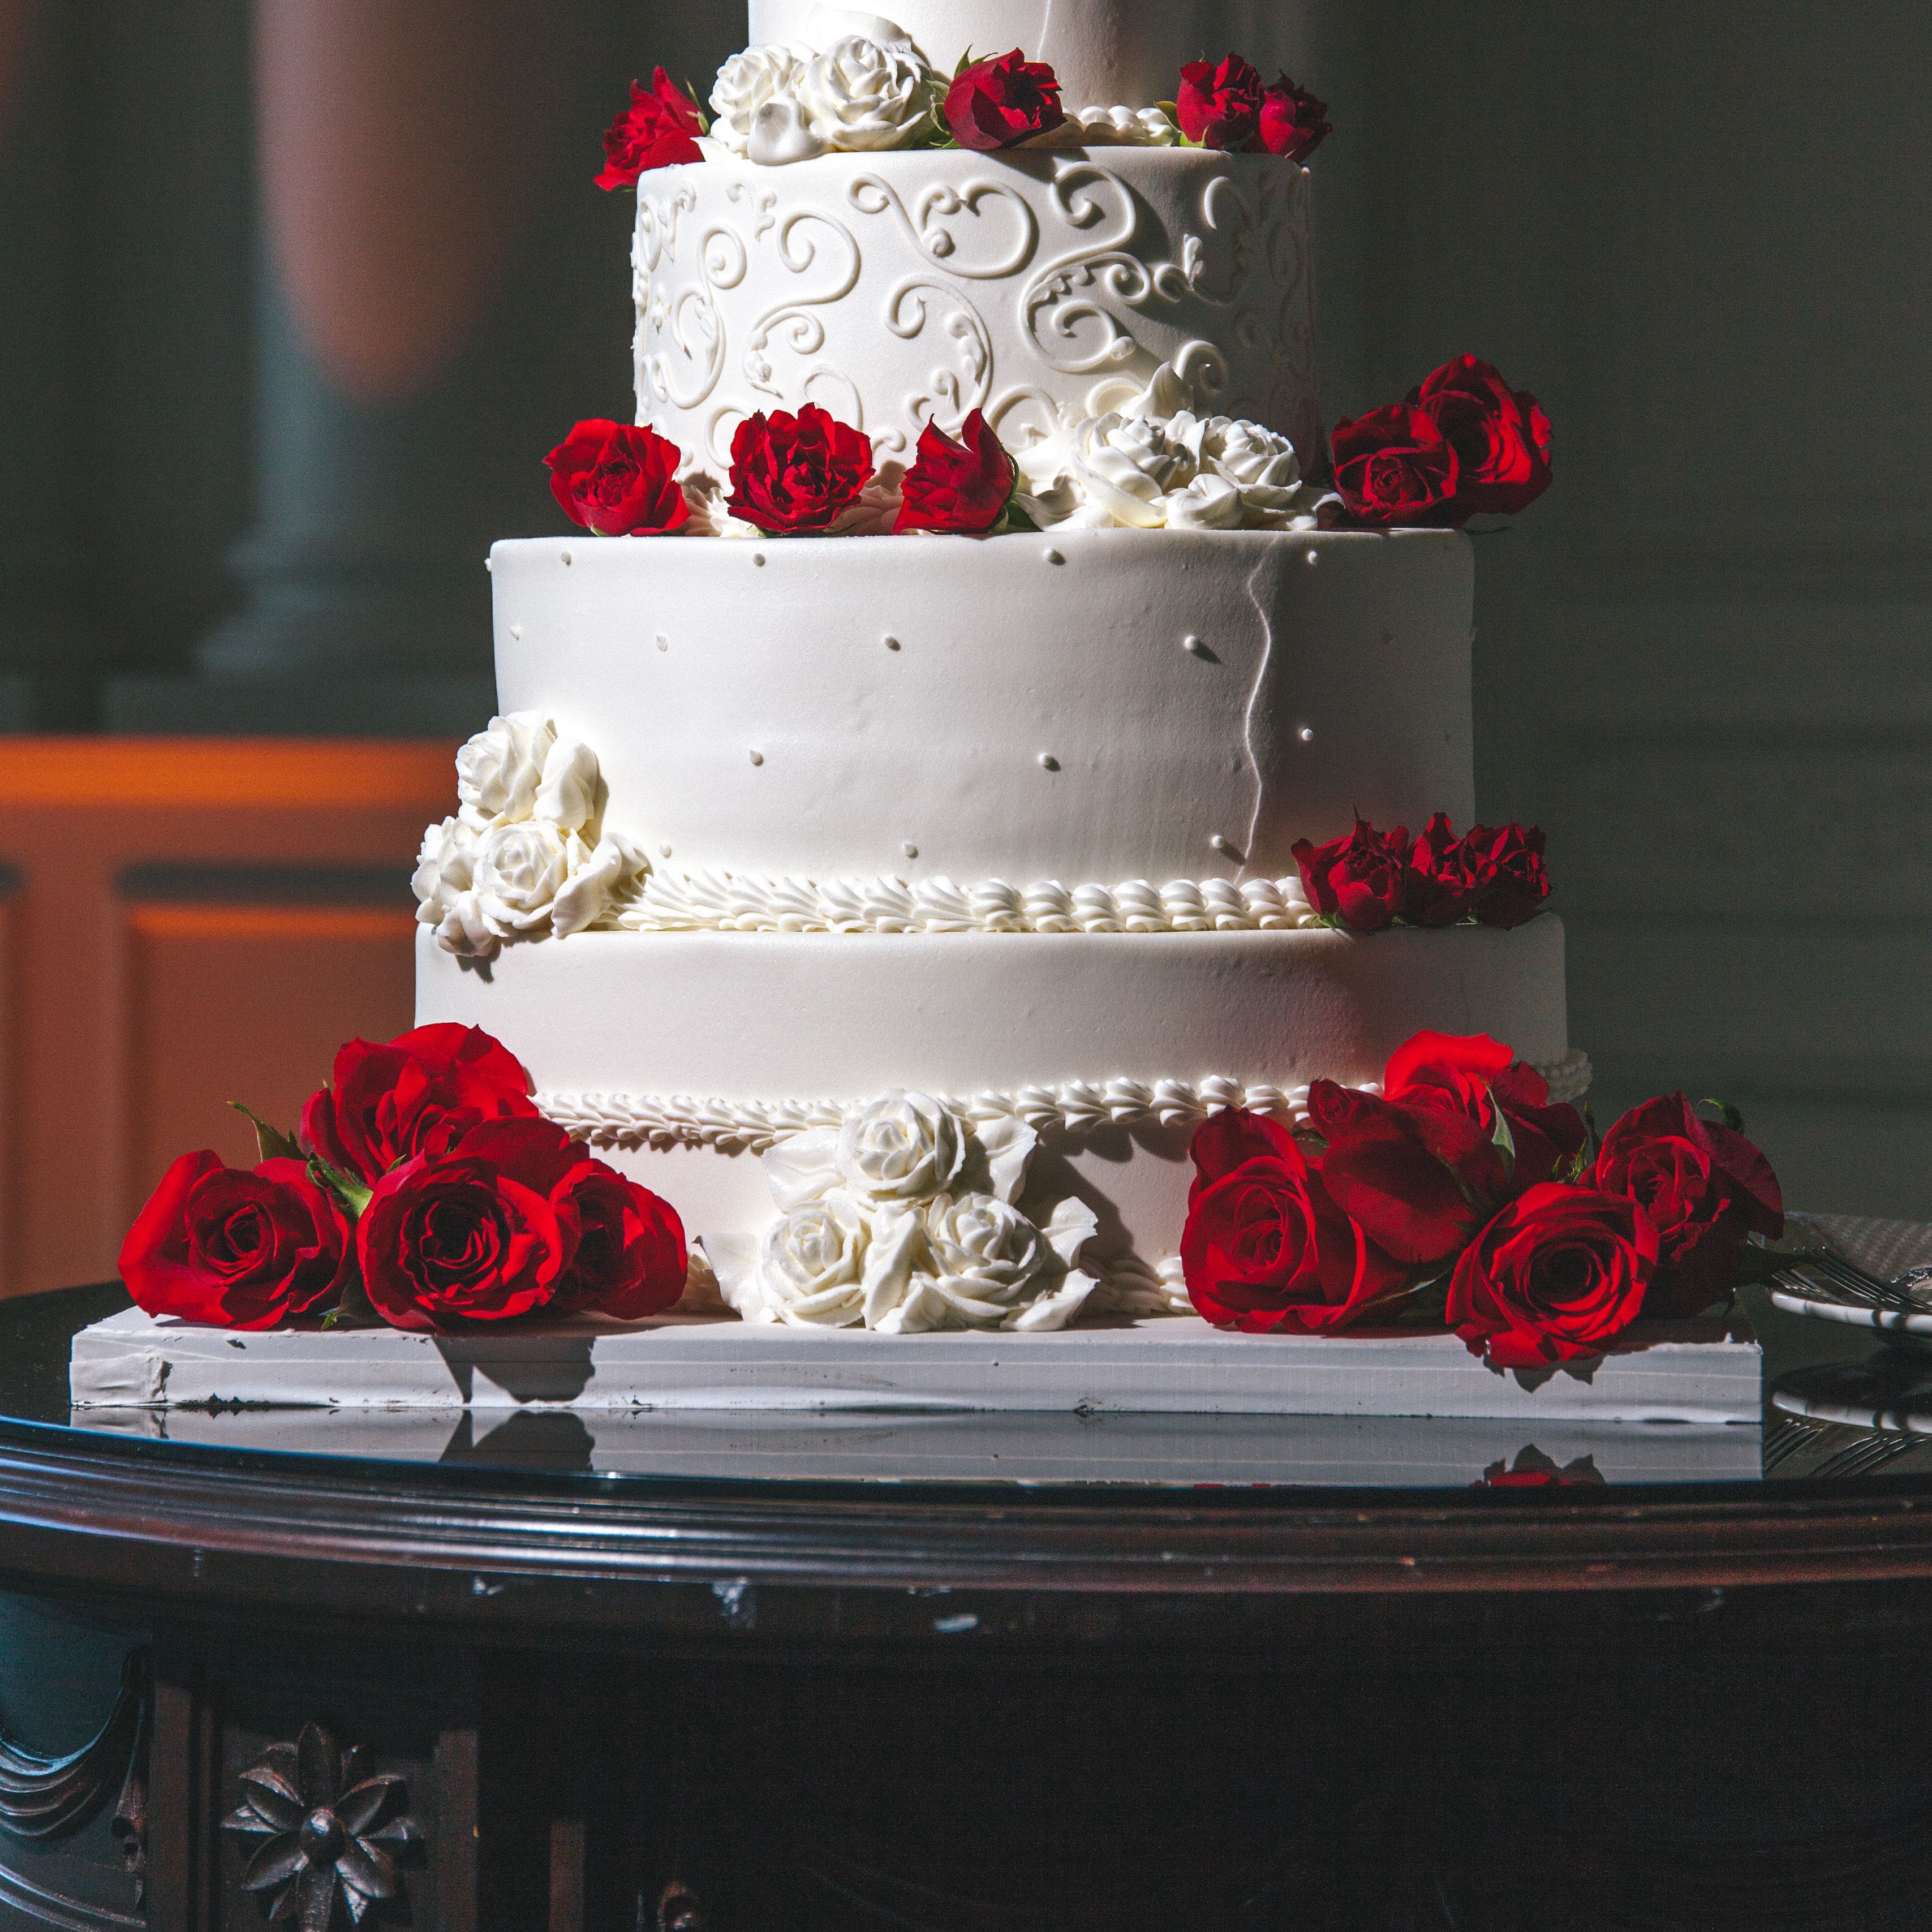 Cake home иркутск свадебные торты